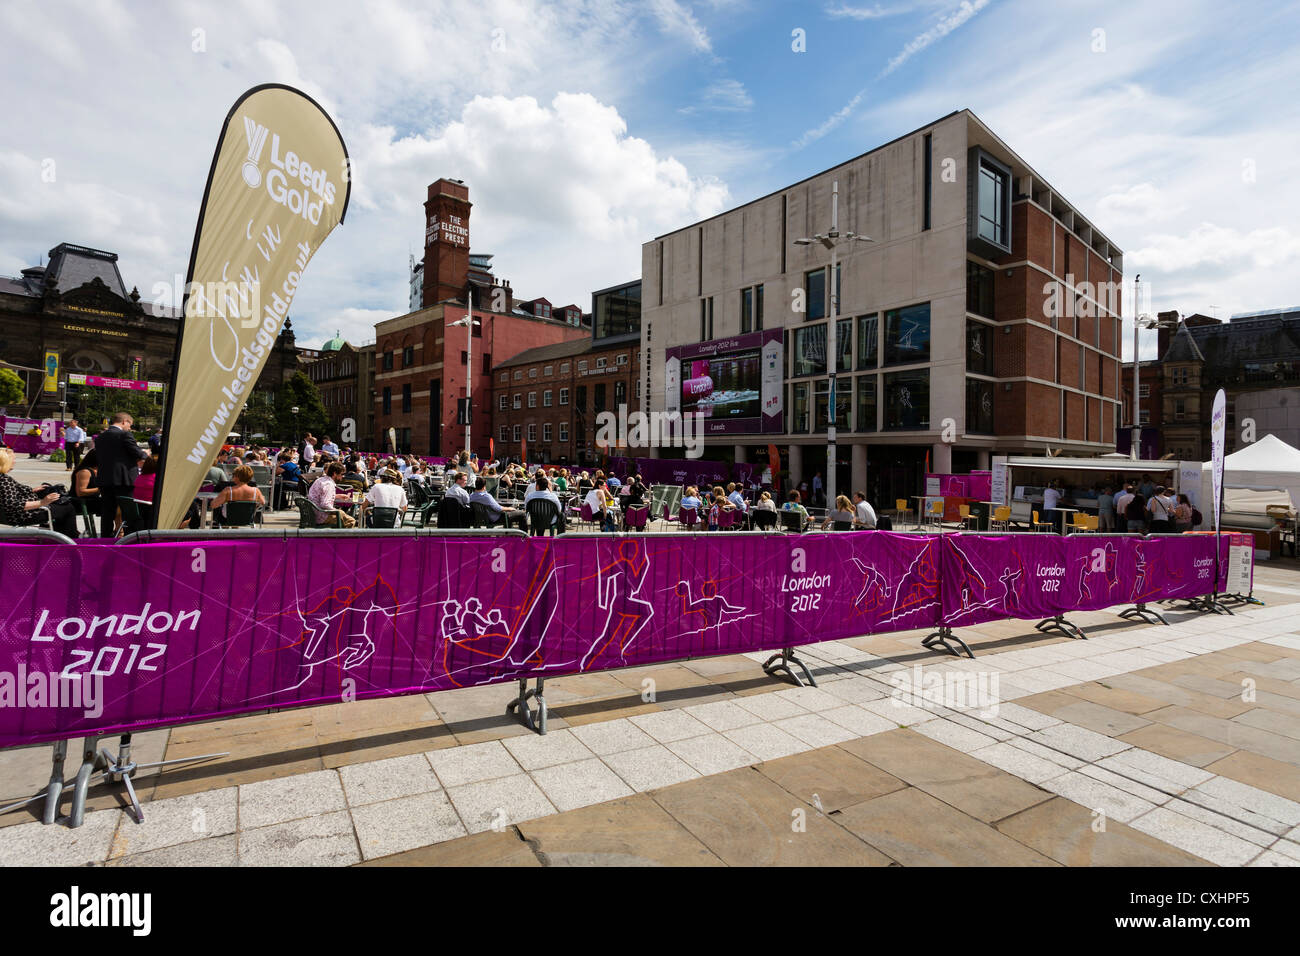 Menschen beobachten einen BBC-Feed für die Olympiade 2012 in London auf einer großen Leinwand im Millenium Square, Leeds. Stockfoto